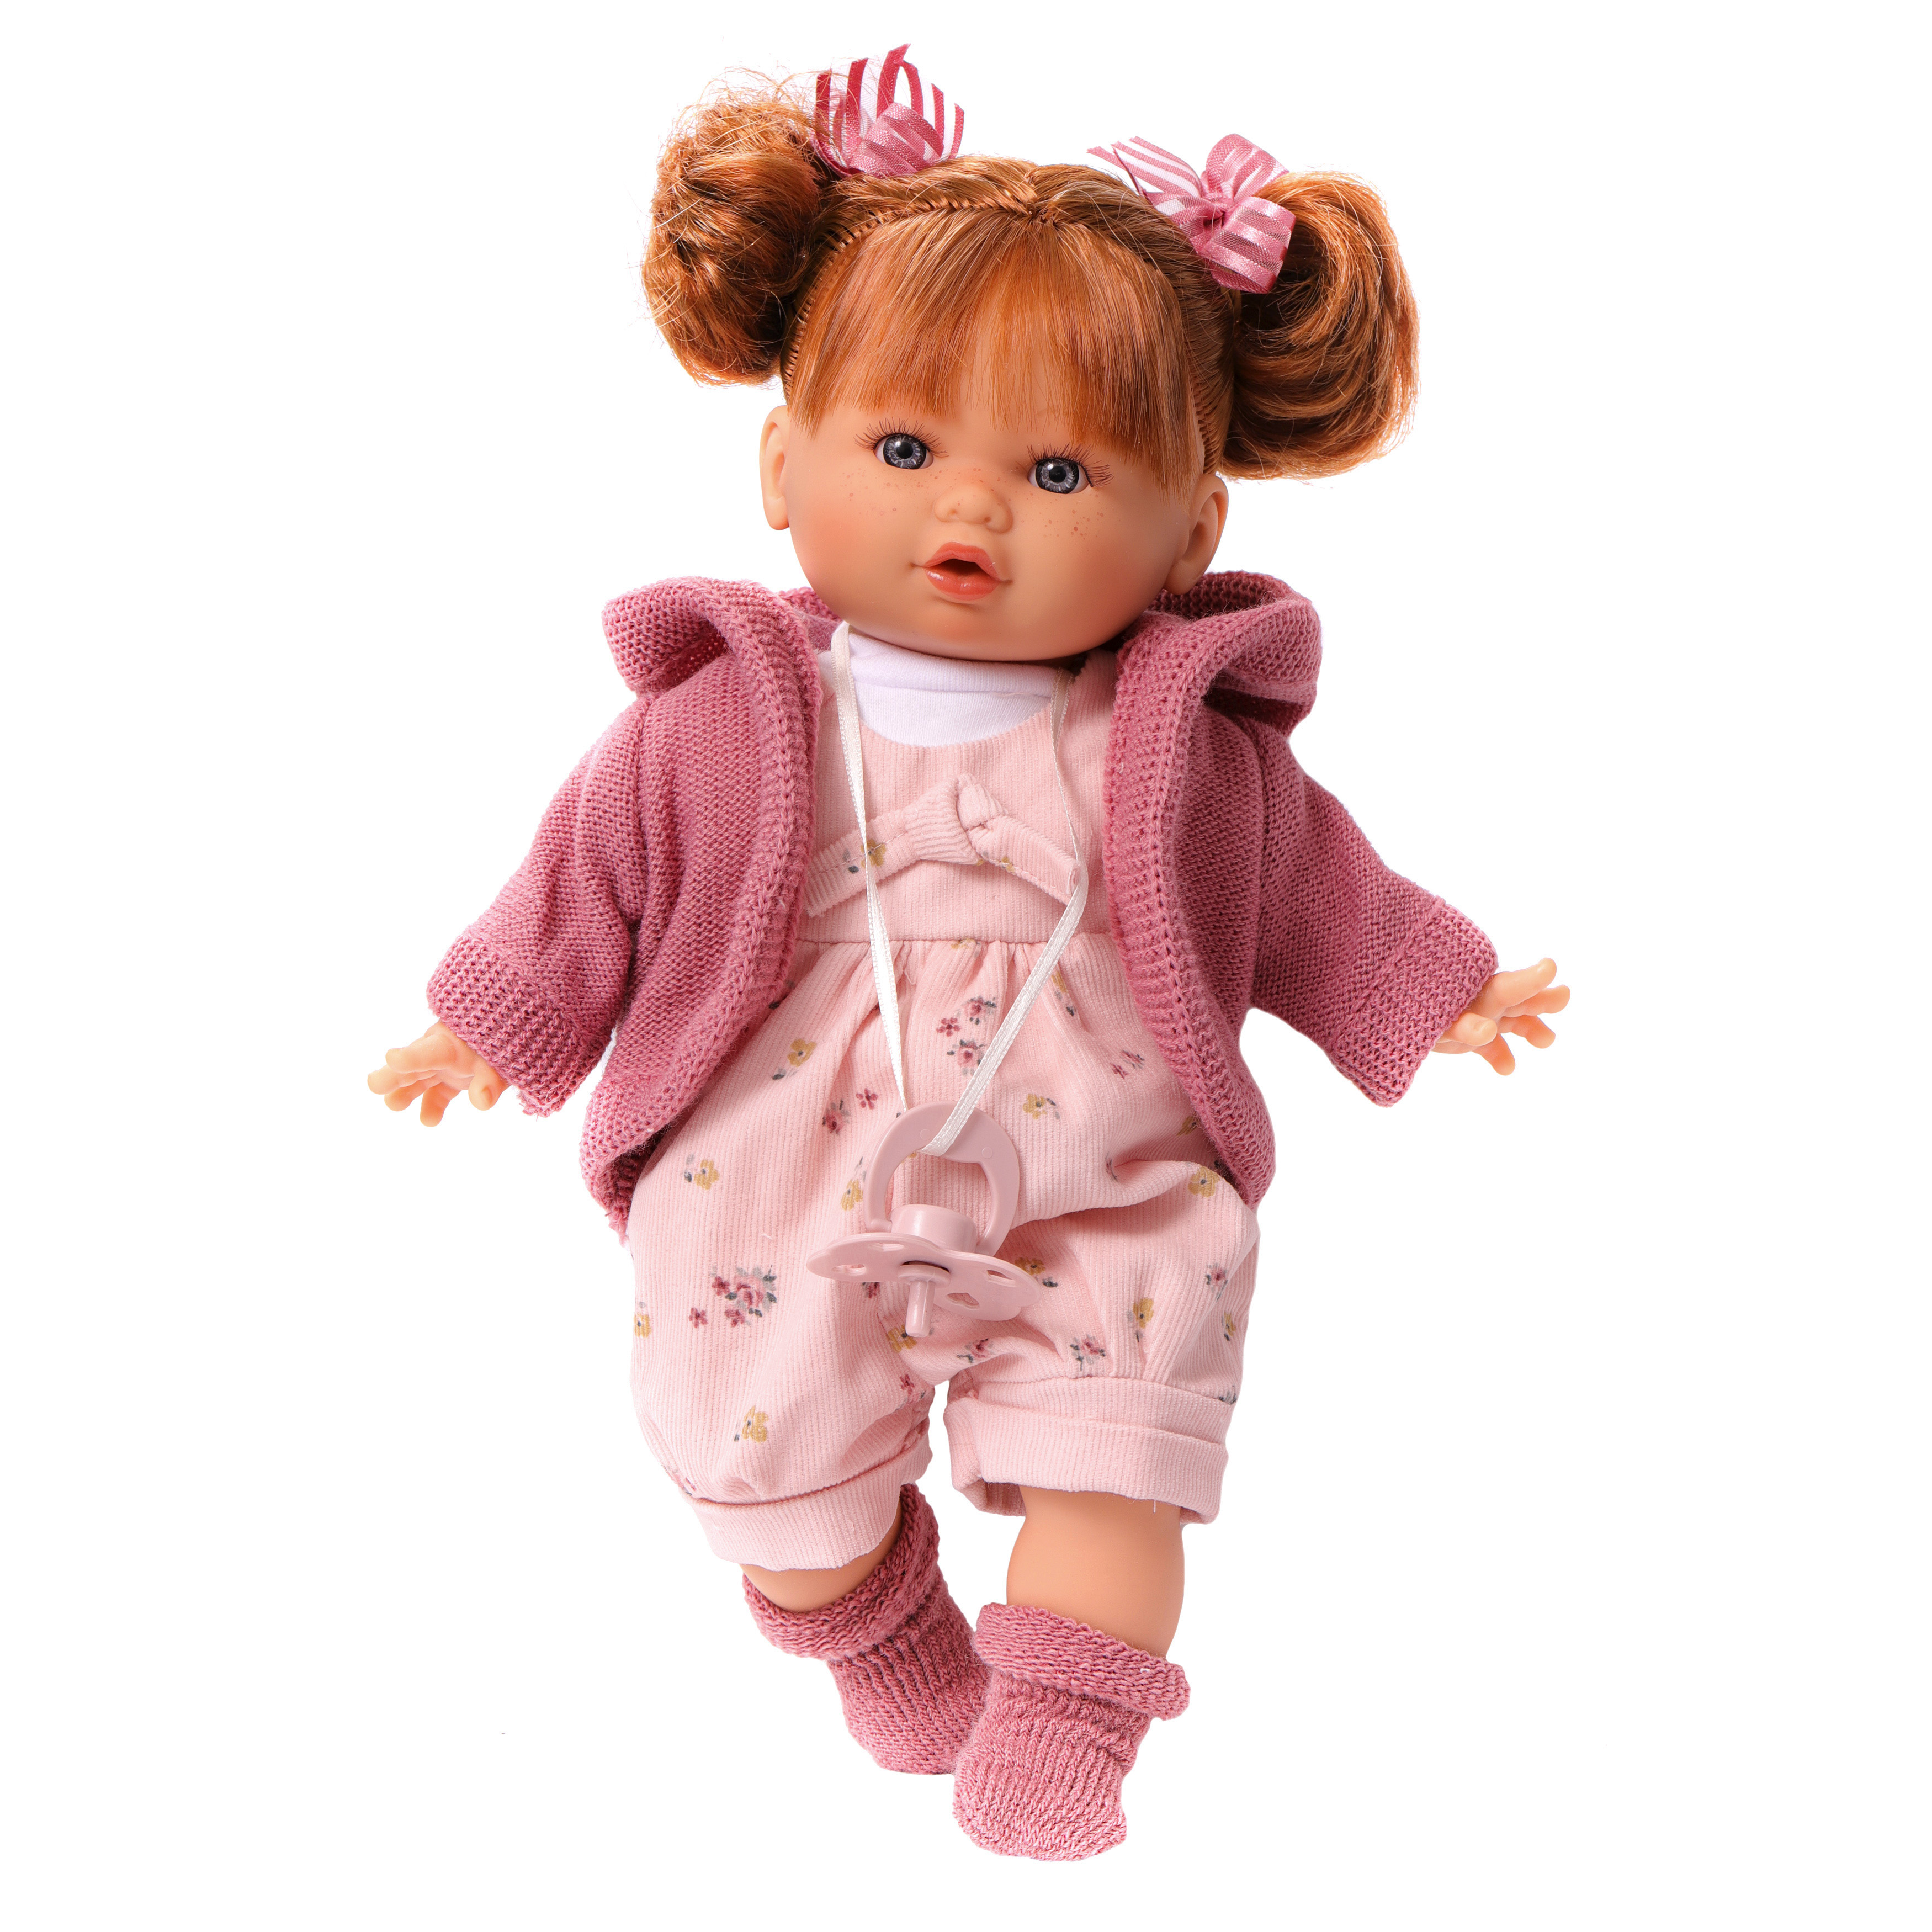 Кукла говорящая Antonio Juan Оливия в розовом, 30 см, плачет, мягконабивная 13144 кукла пупс antonio juan глаша в сумочке переноске 21 см виниловая испанская 85211